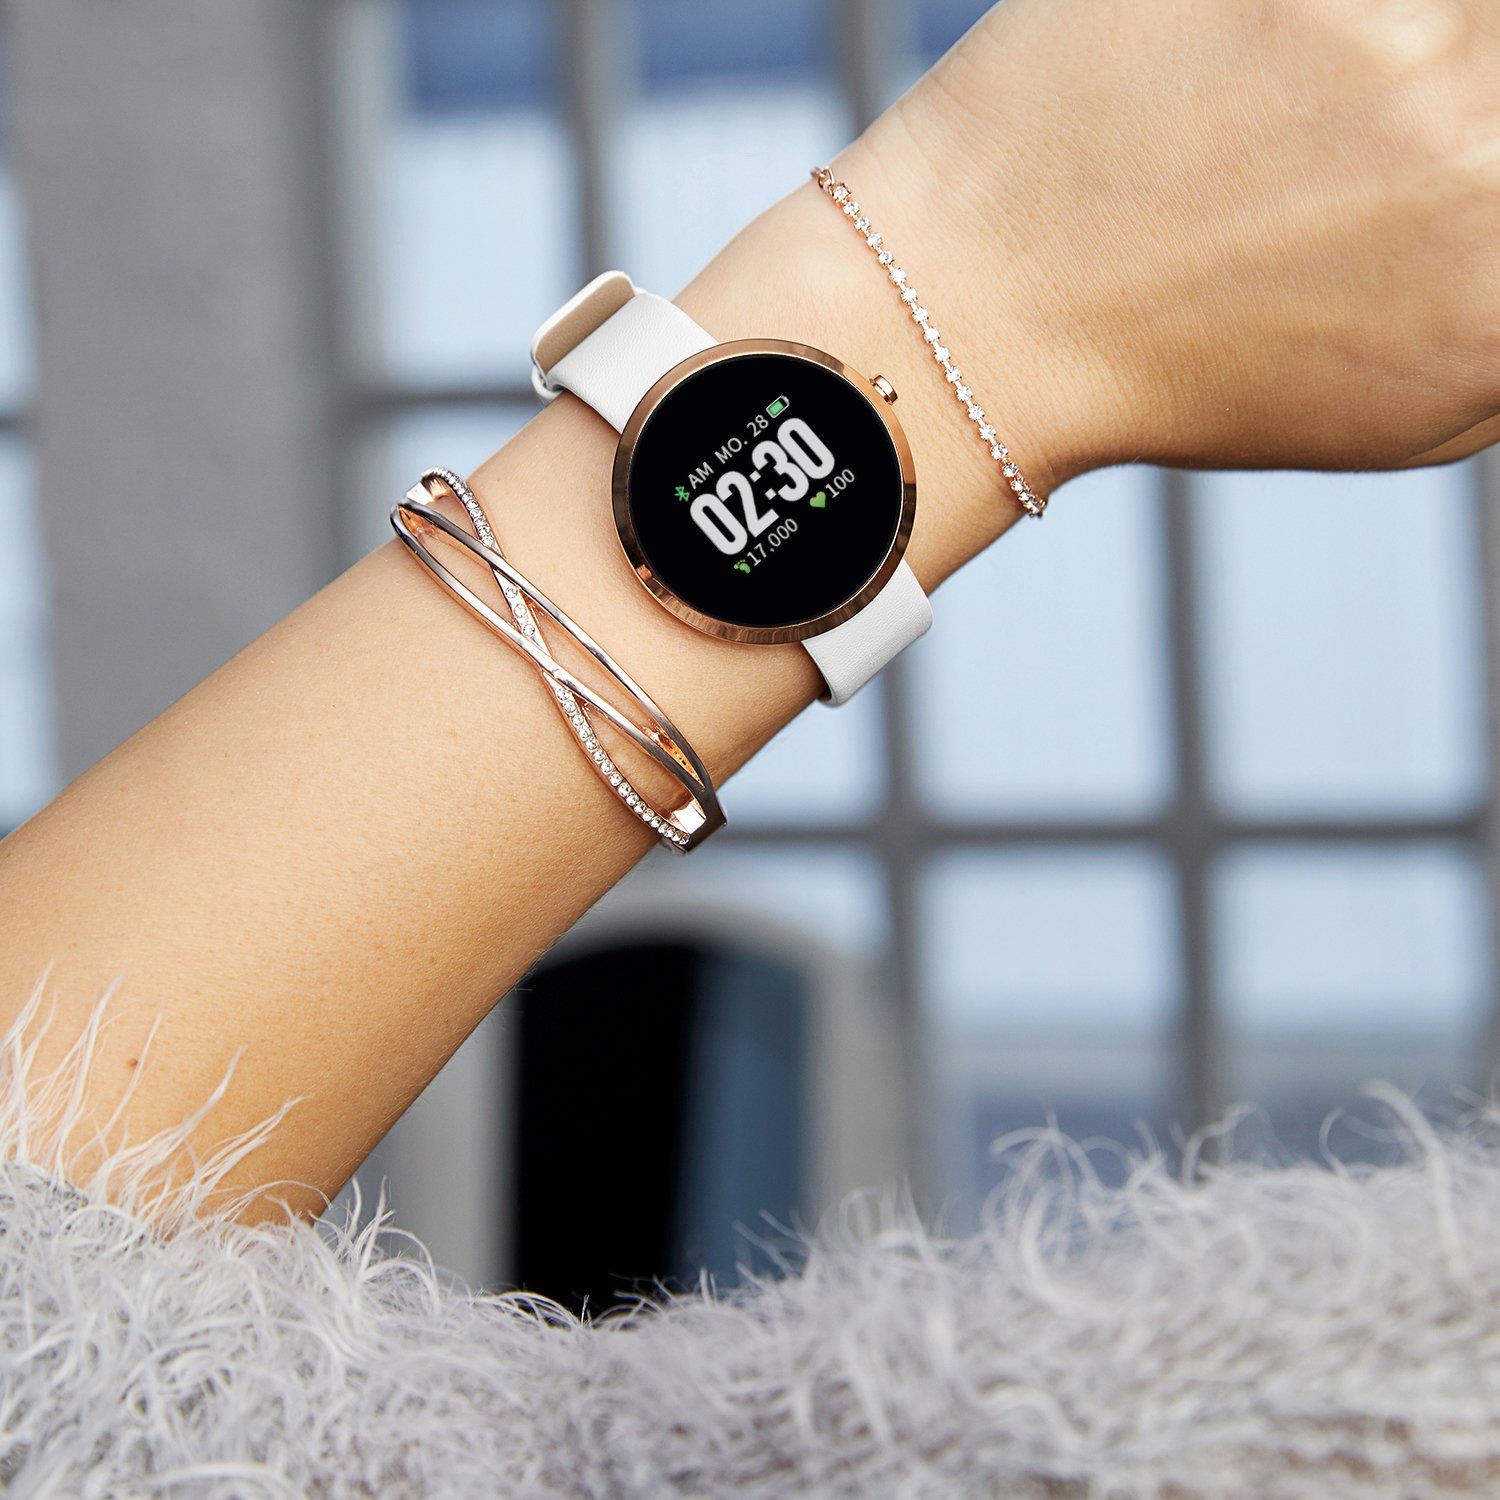 Damen Herren Smartwatch Uhr Armband Sport Pulsuhr Blutdruck Fitness Tracker NEU 